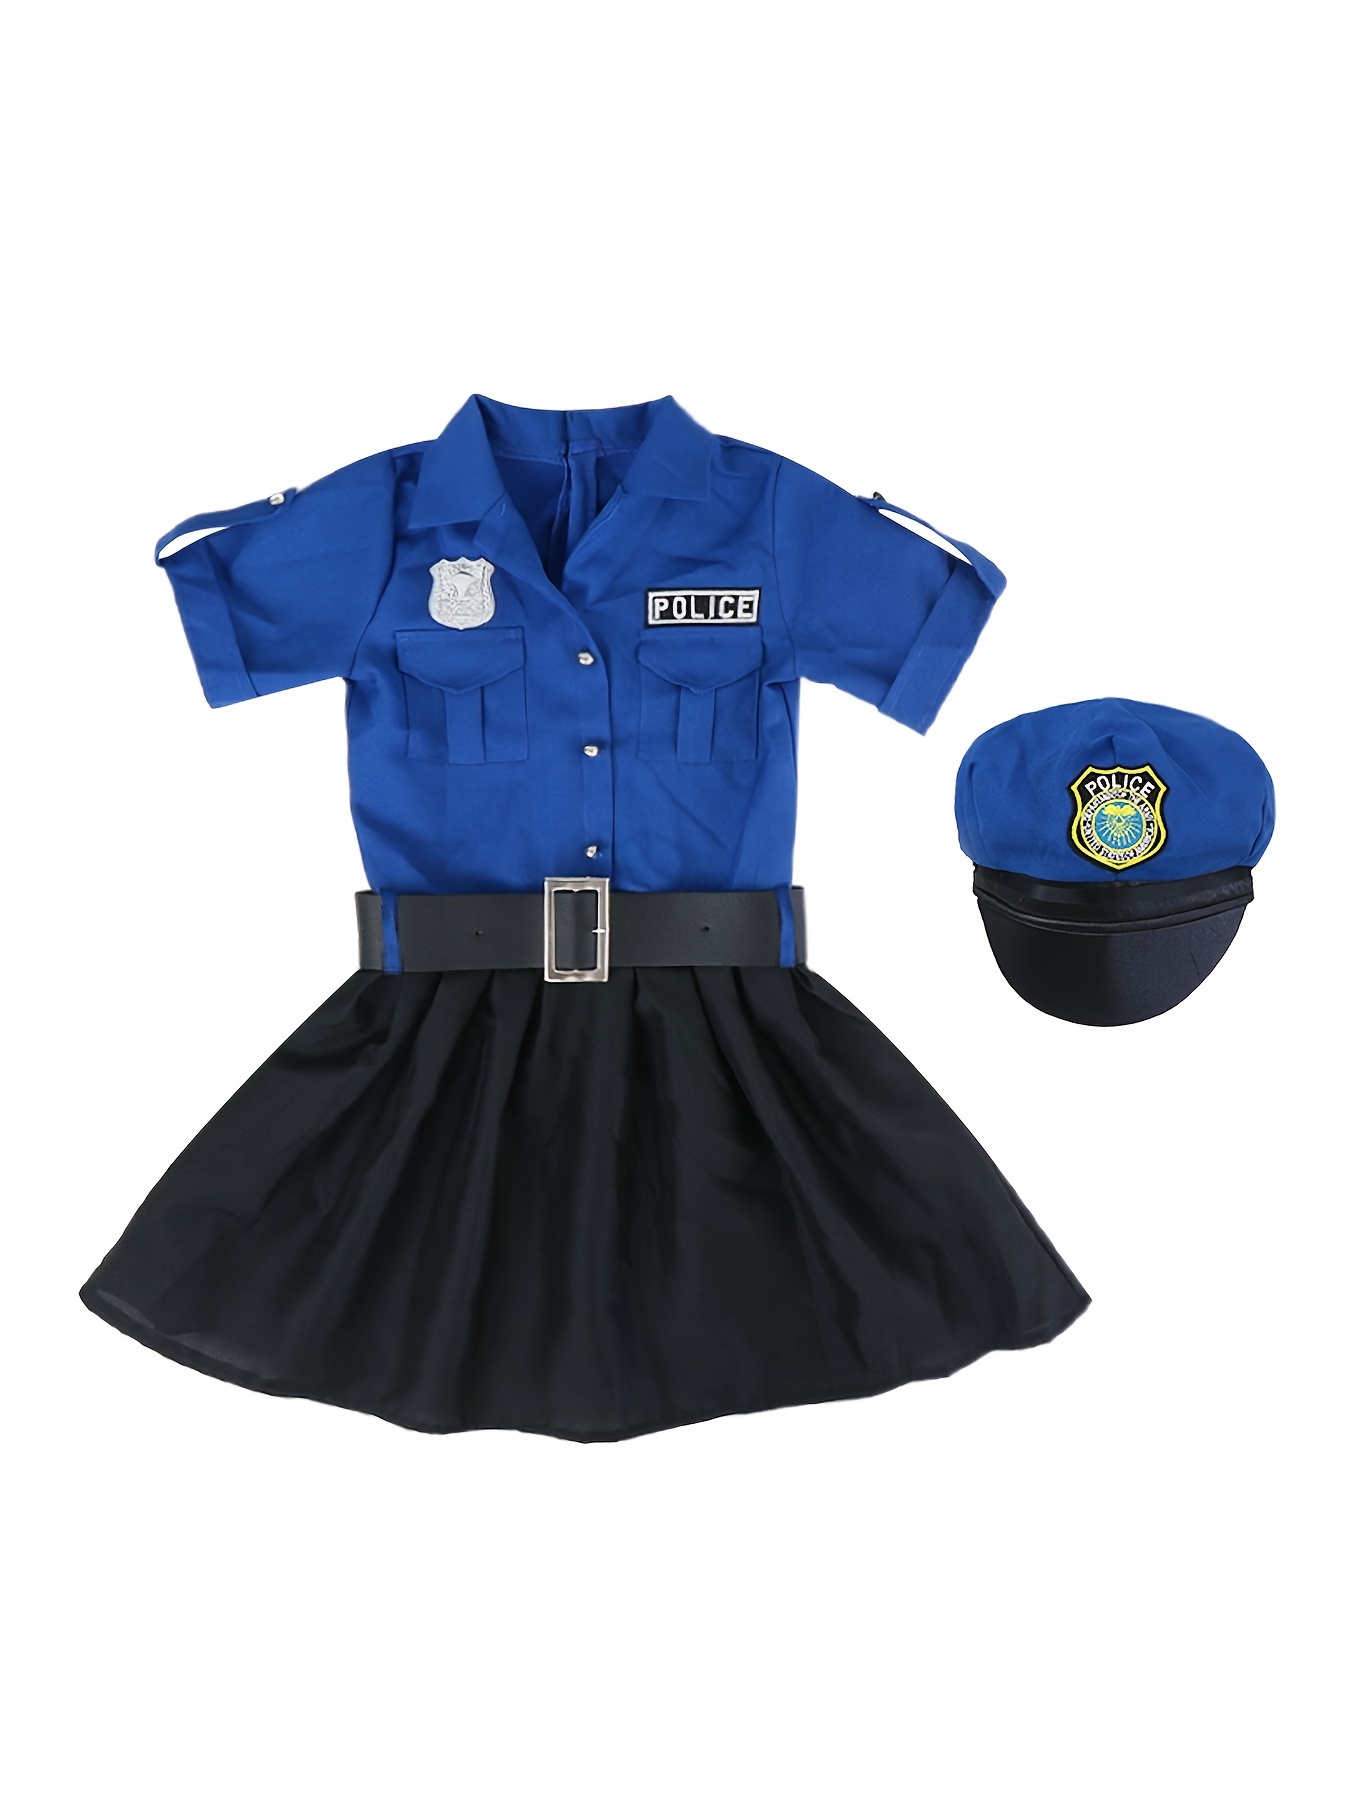 Disfraz de oficial de policía para niños, disfraz de policía para niños con  uniforme de policía, disfraz de Halloween para niños, disfraz, kit de